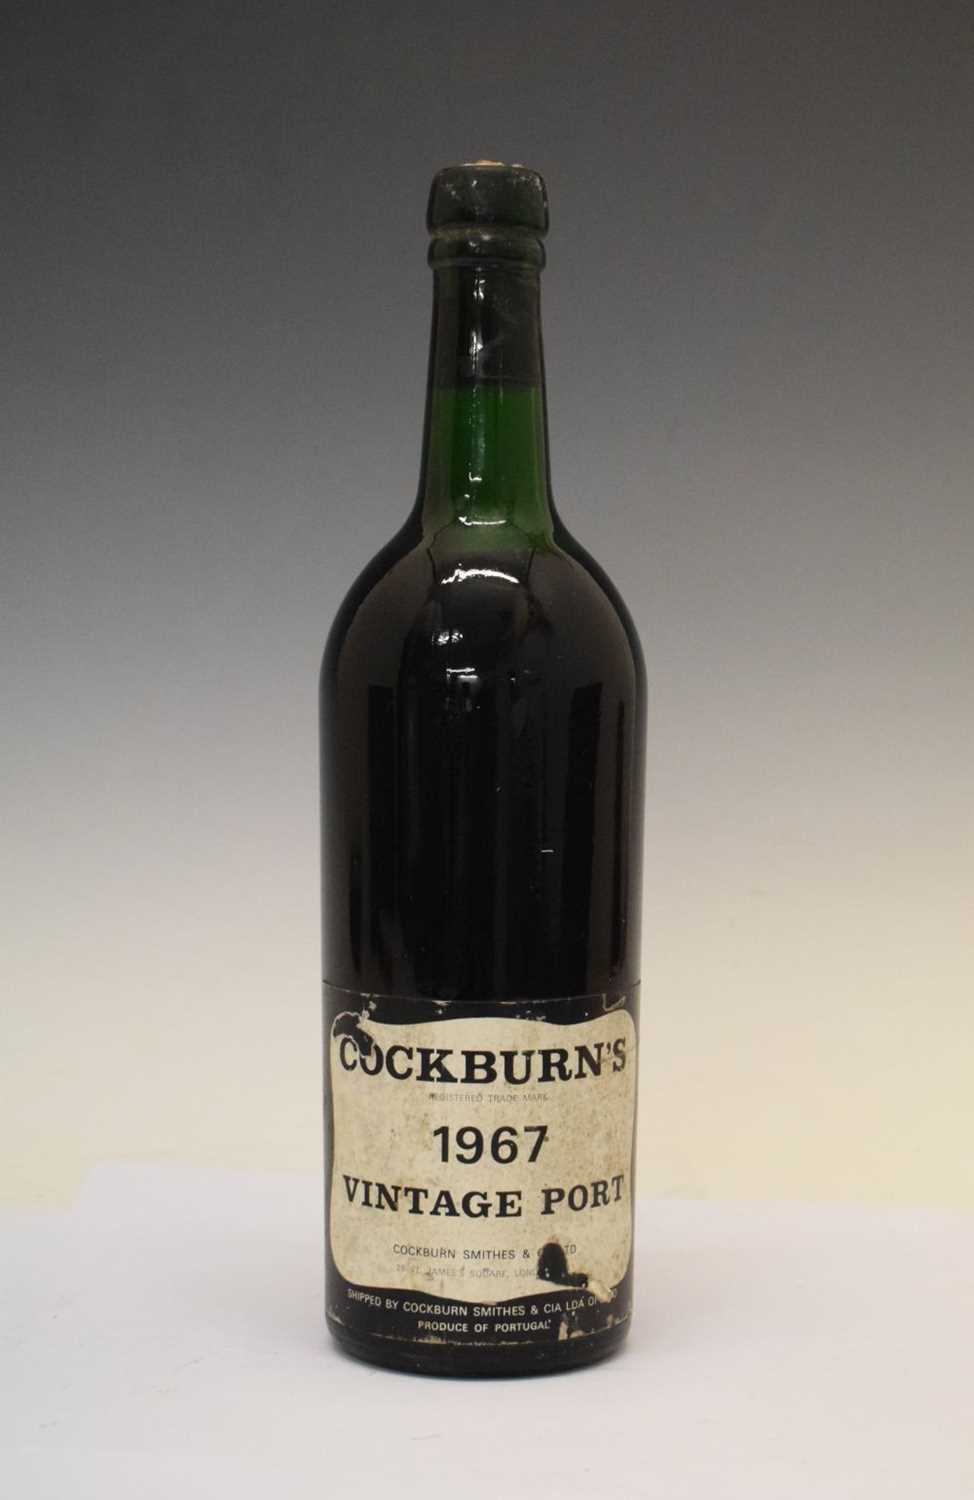 Bottle of Cockburn's Vintage Port, 1967